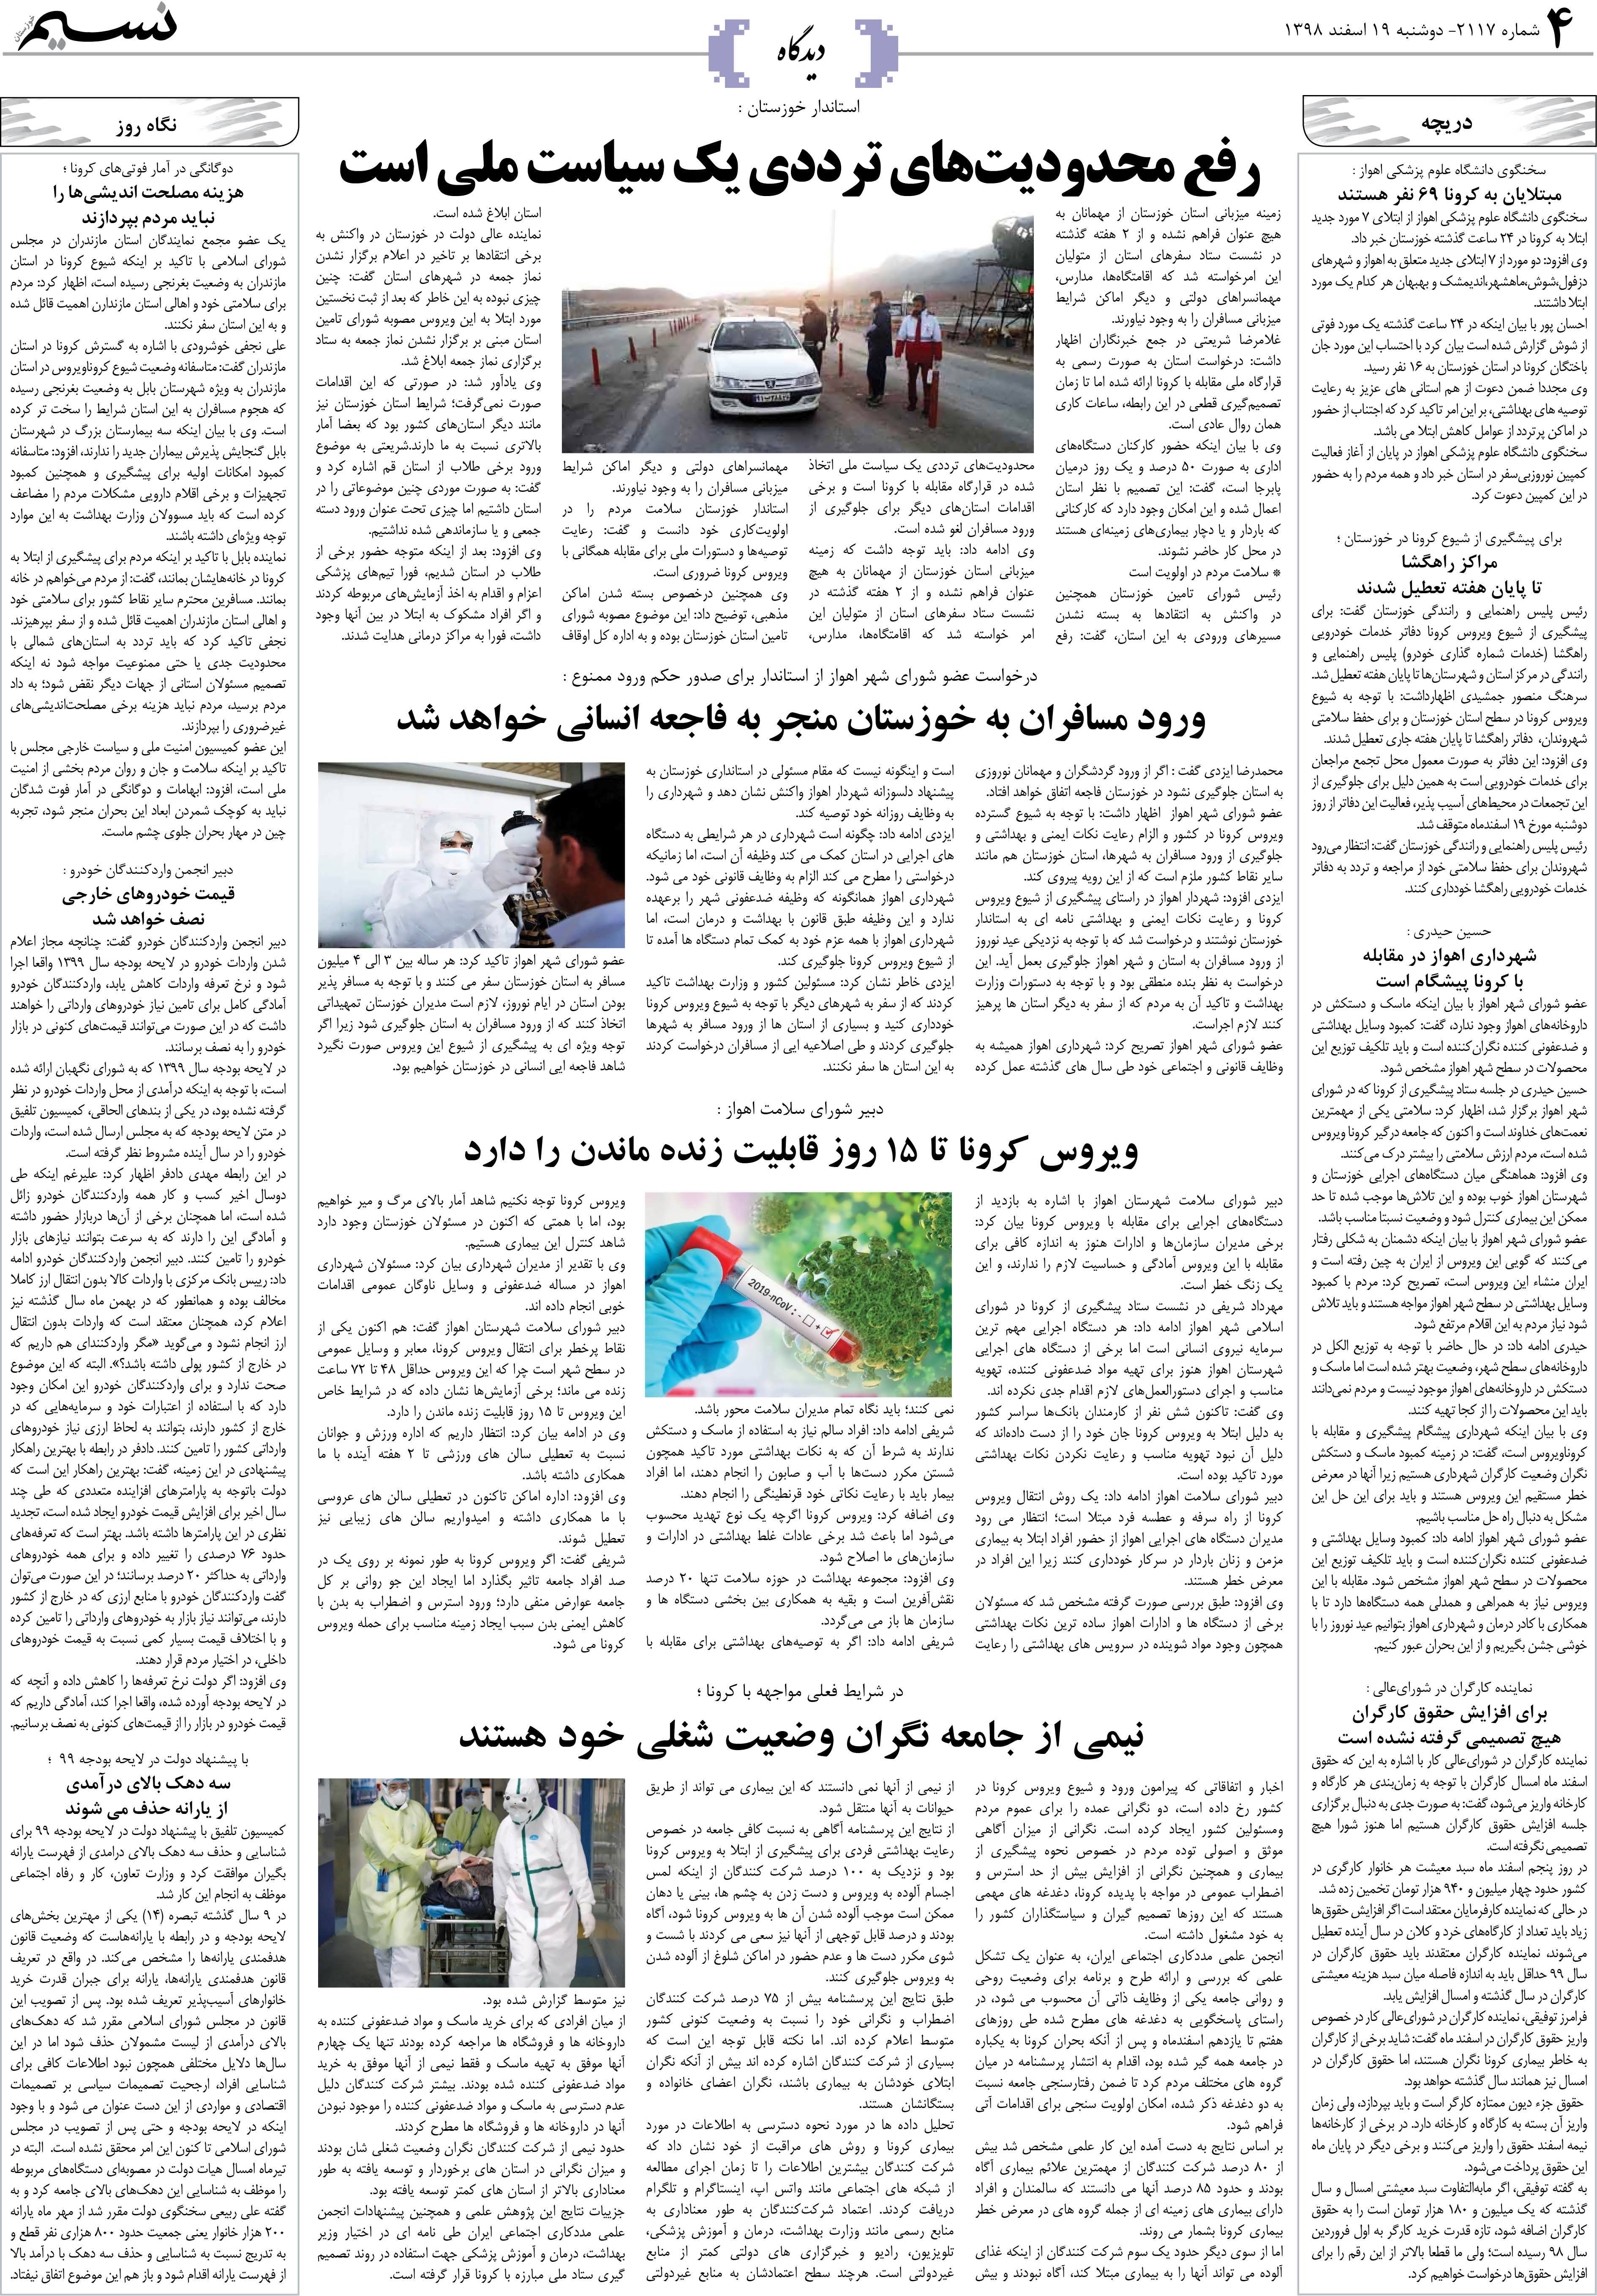 صفحه دیدگاه روزنامه نسیم شماره 2117